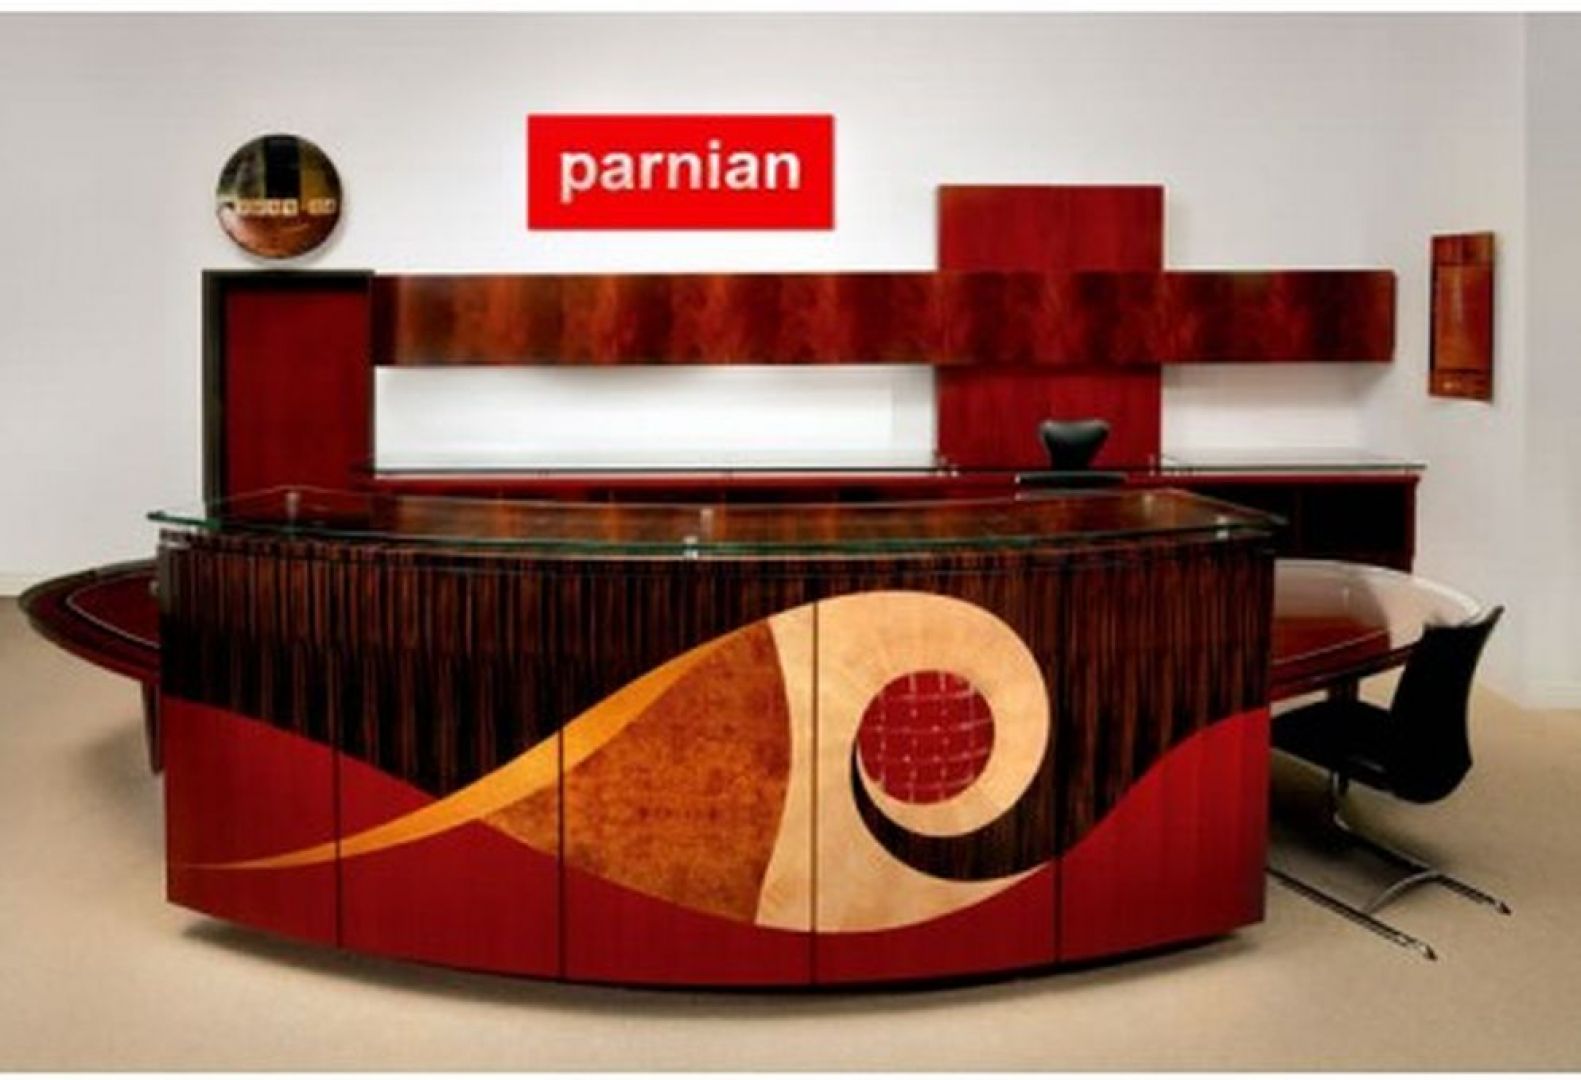 Prezentowane na zdjęciu unikalne biurko kosztuje ok. 200 tys. dolarów. Jego produkcja trwała ponad 5 miesięcy. Autorem projektu jest Parnian Furniture Design, ze Scottsdale w Arizonie. Fot. Pernian Furniture 